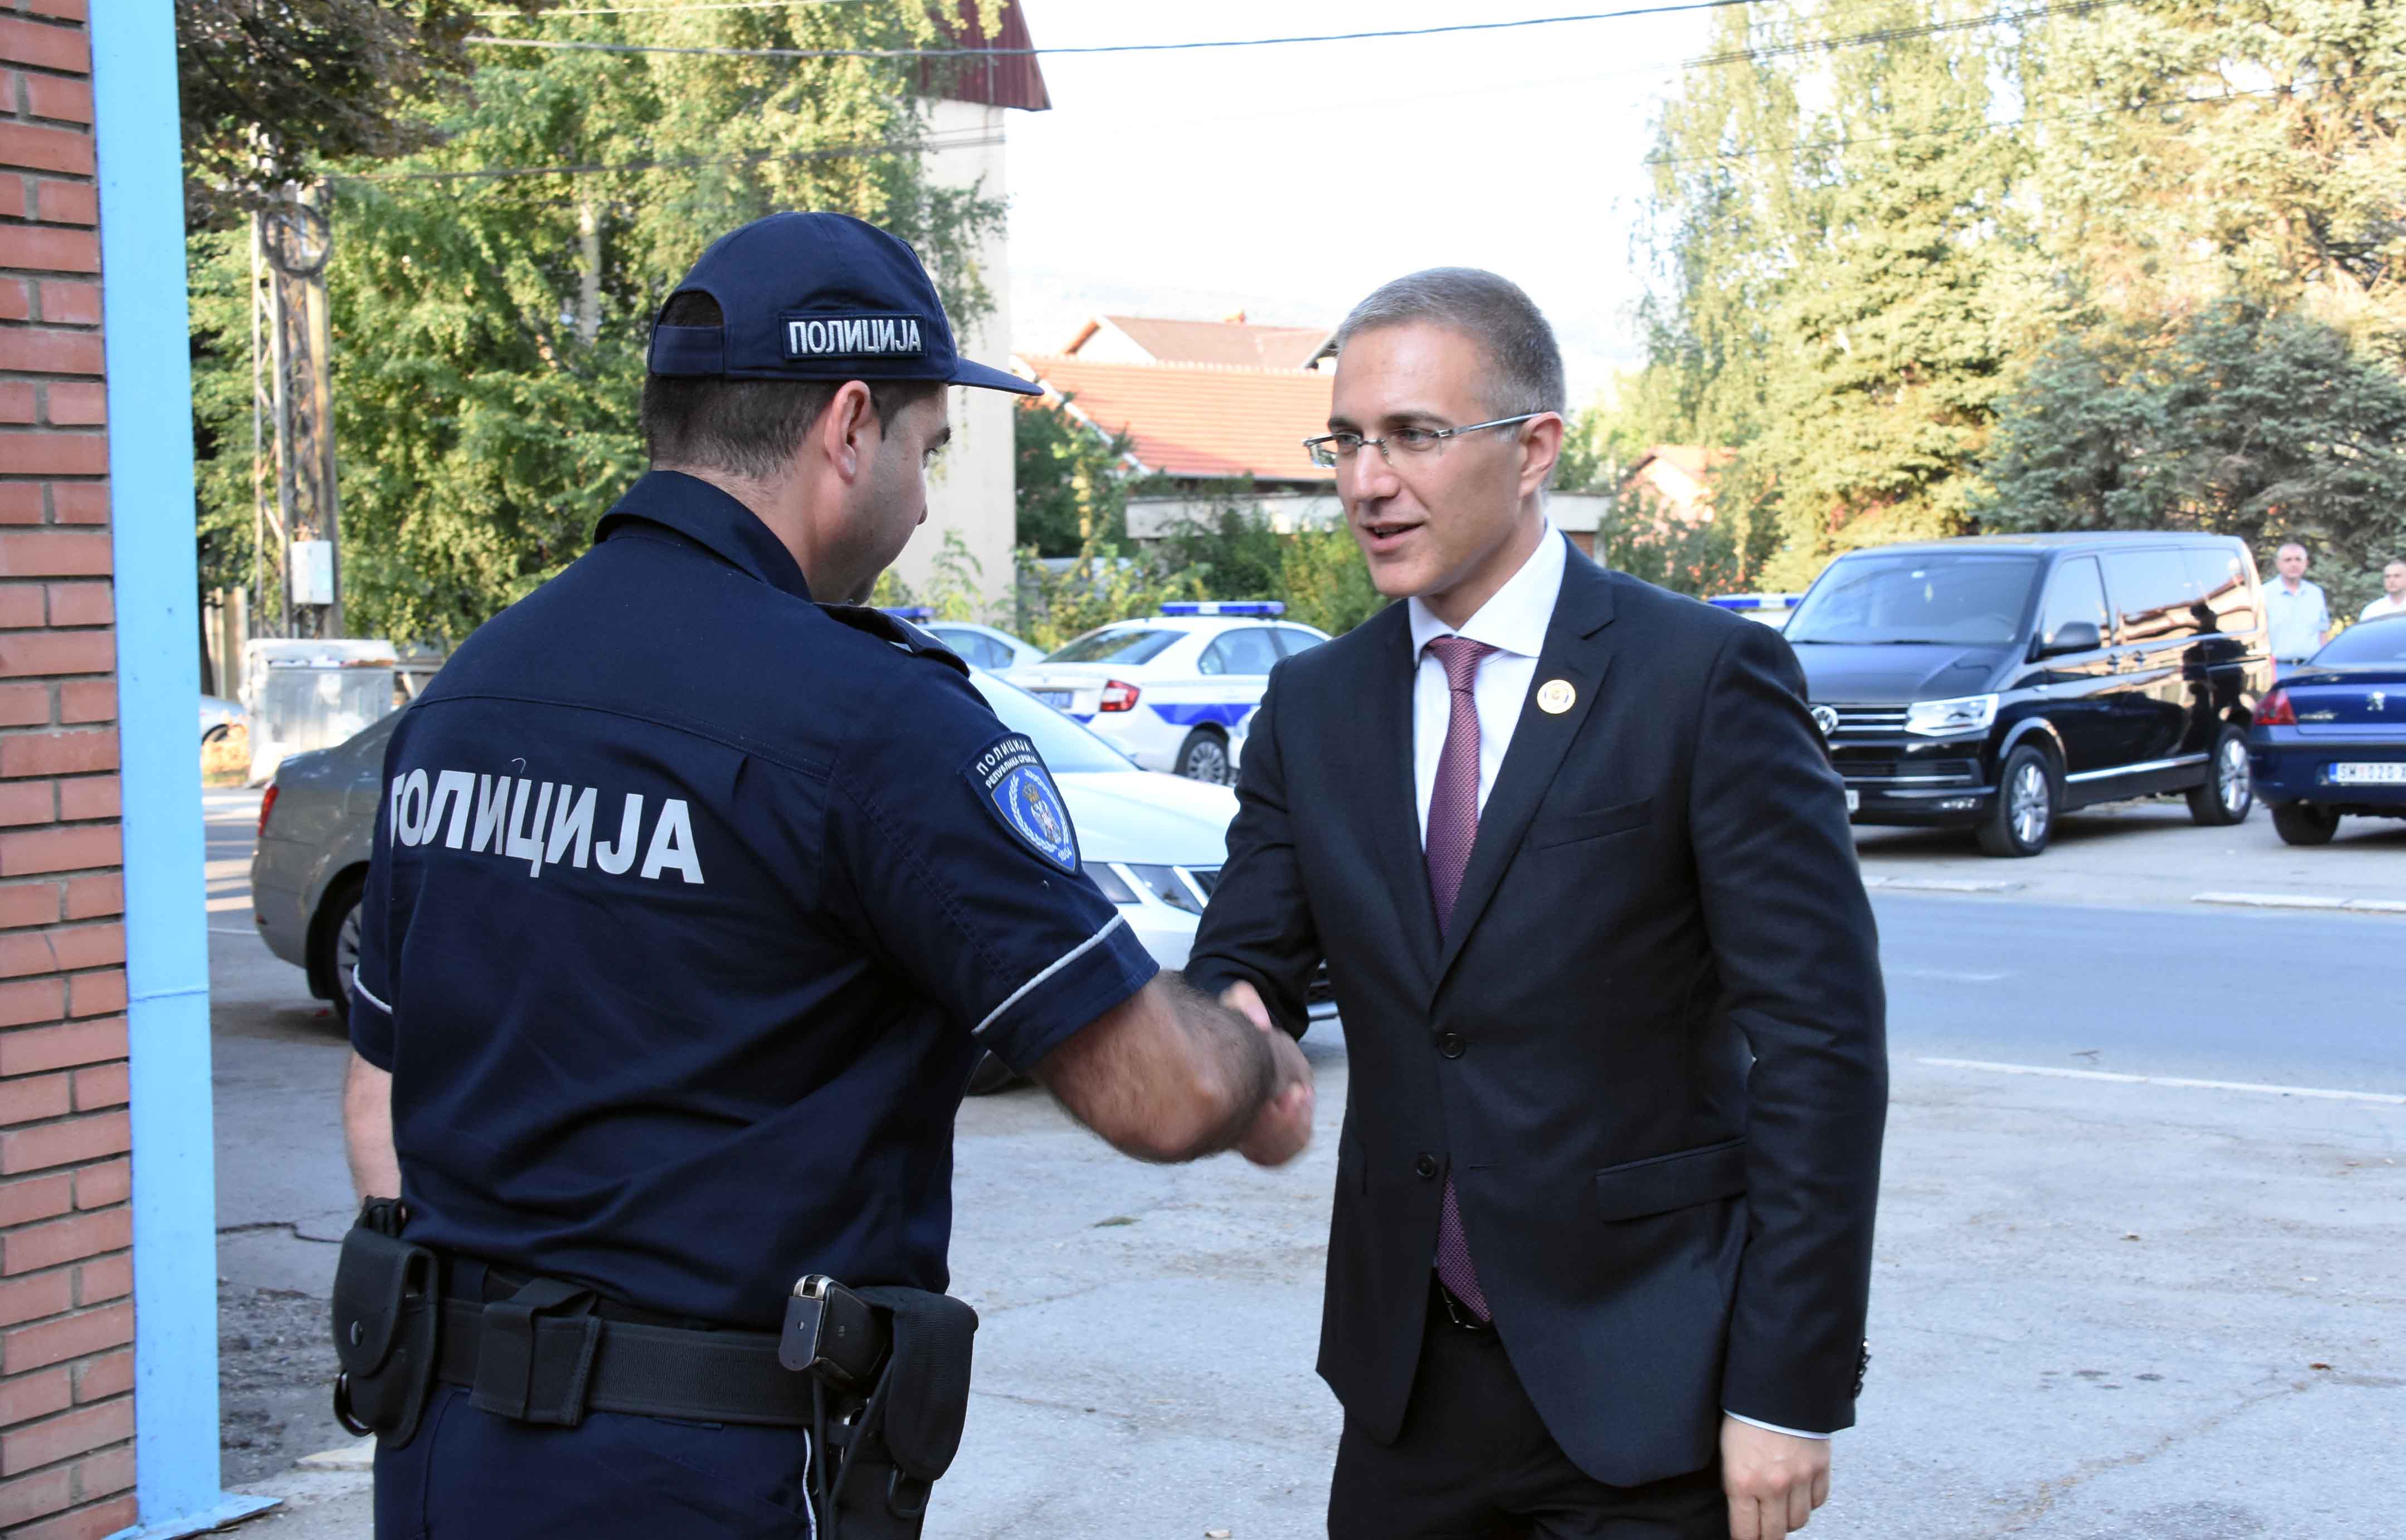 Ministar Stefanović razgovarao sa policijskim službenicima iz Merošine, Dolјevca i Gadžinog Hana